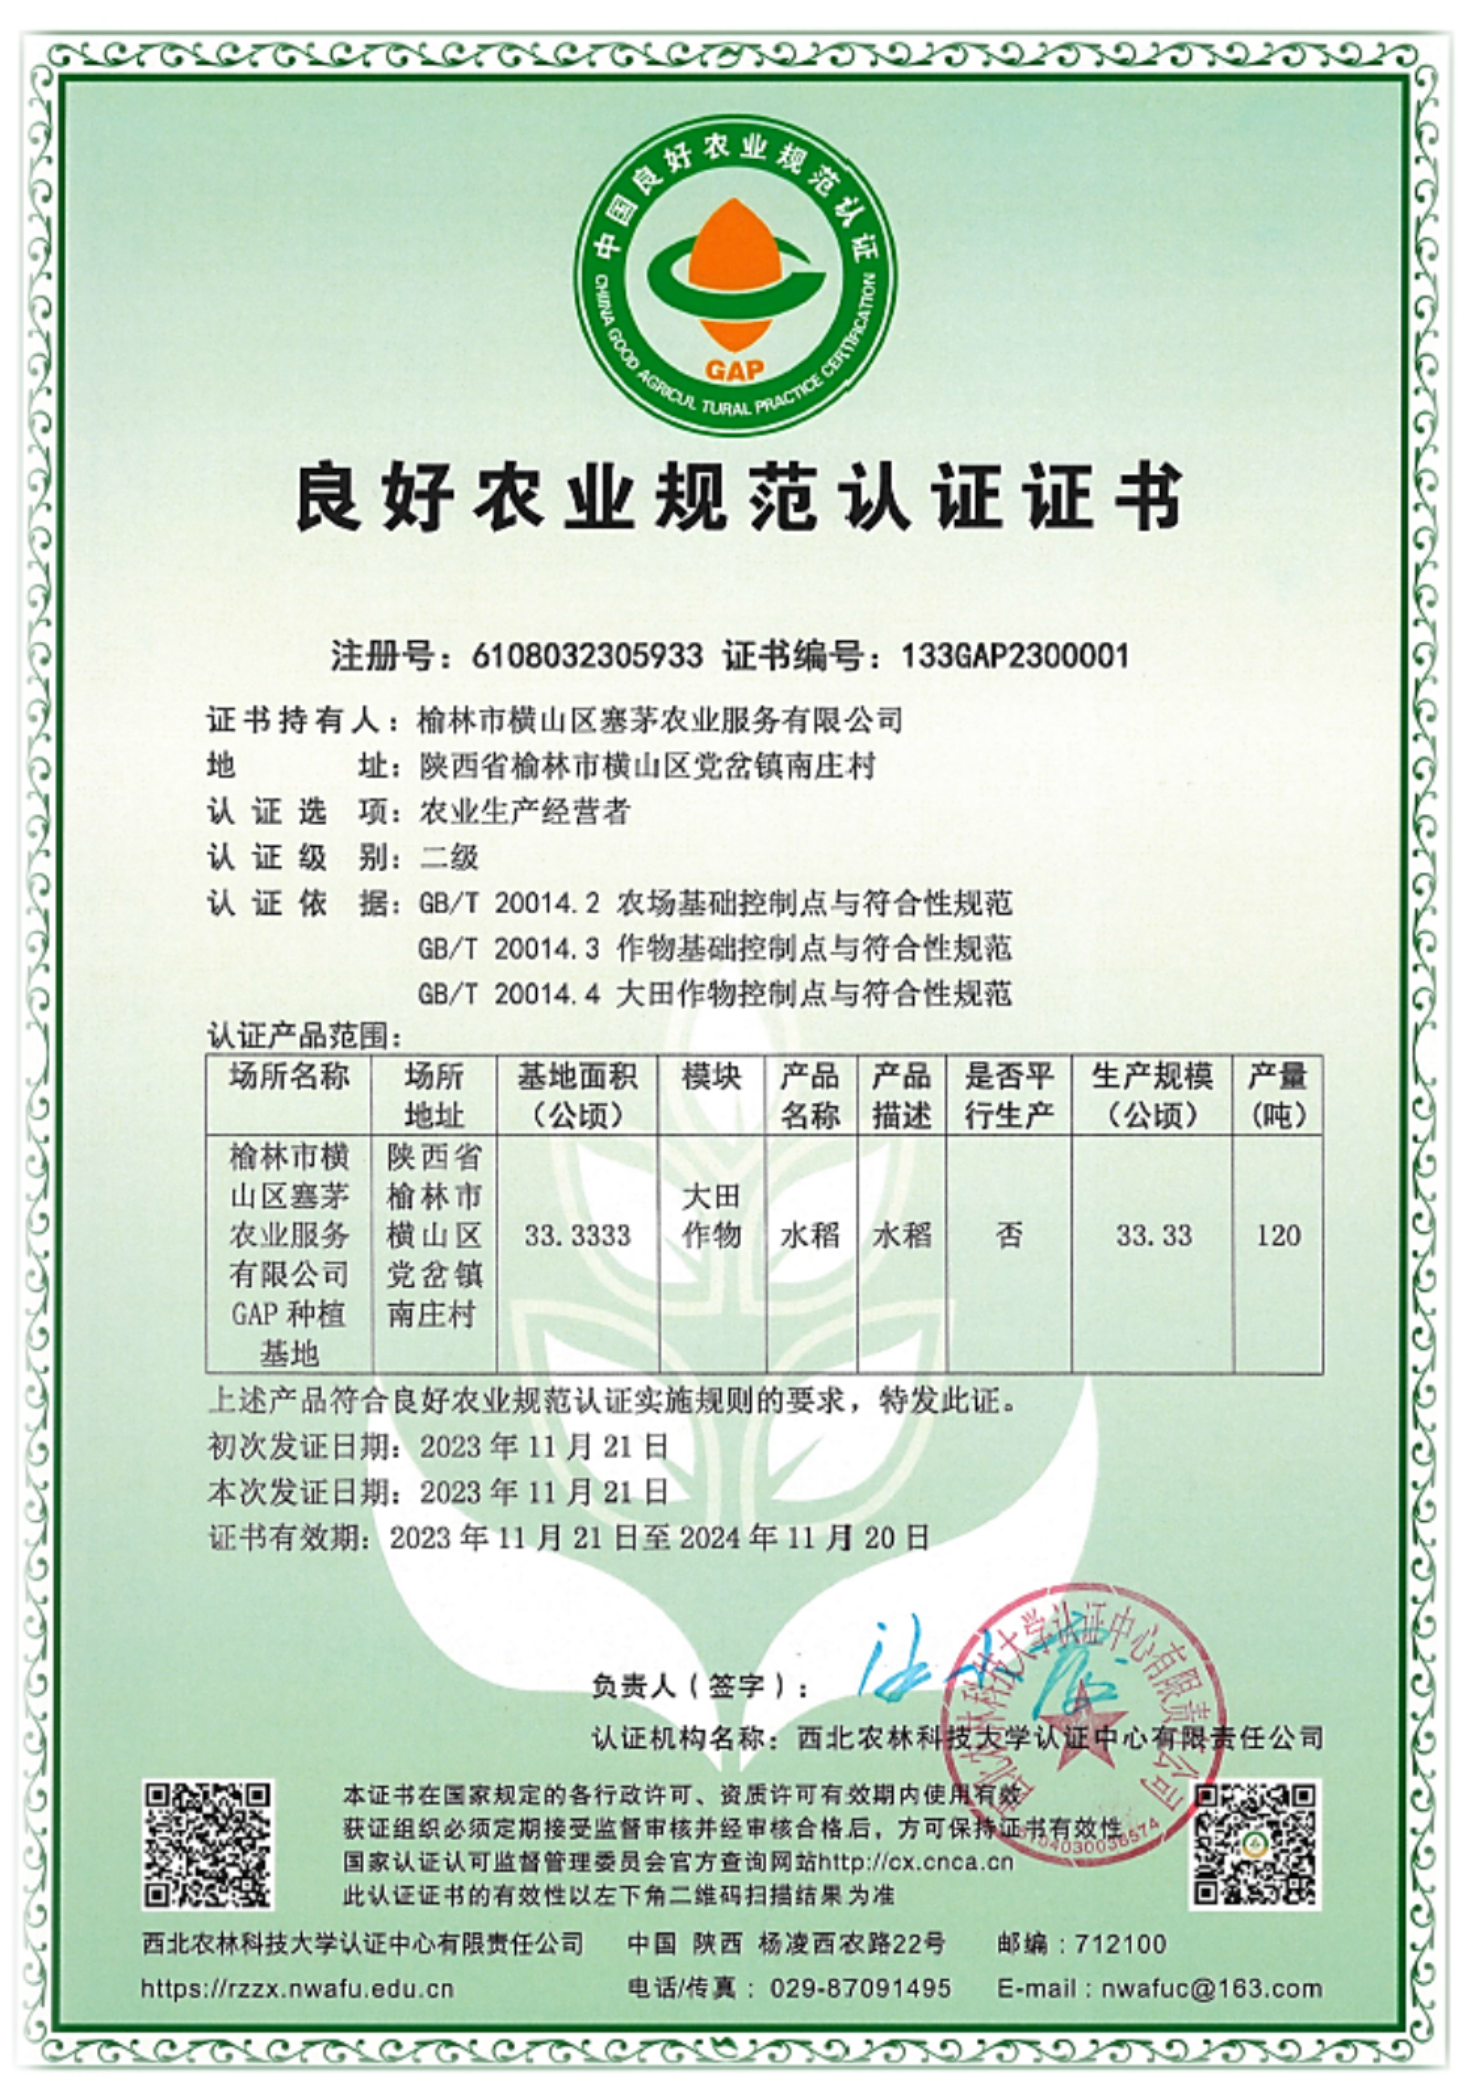 认证中心颁发首批良好农业规范认证证书